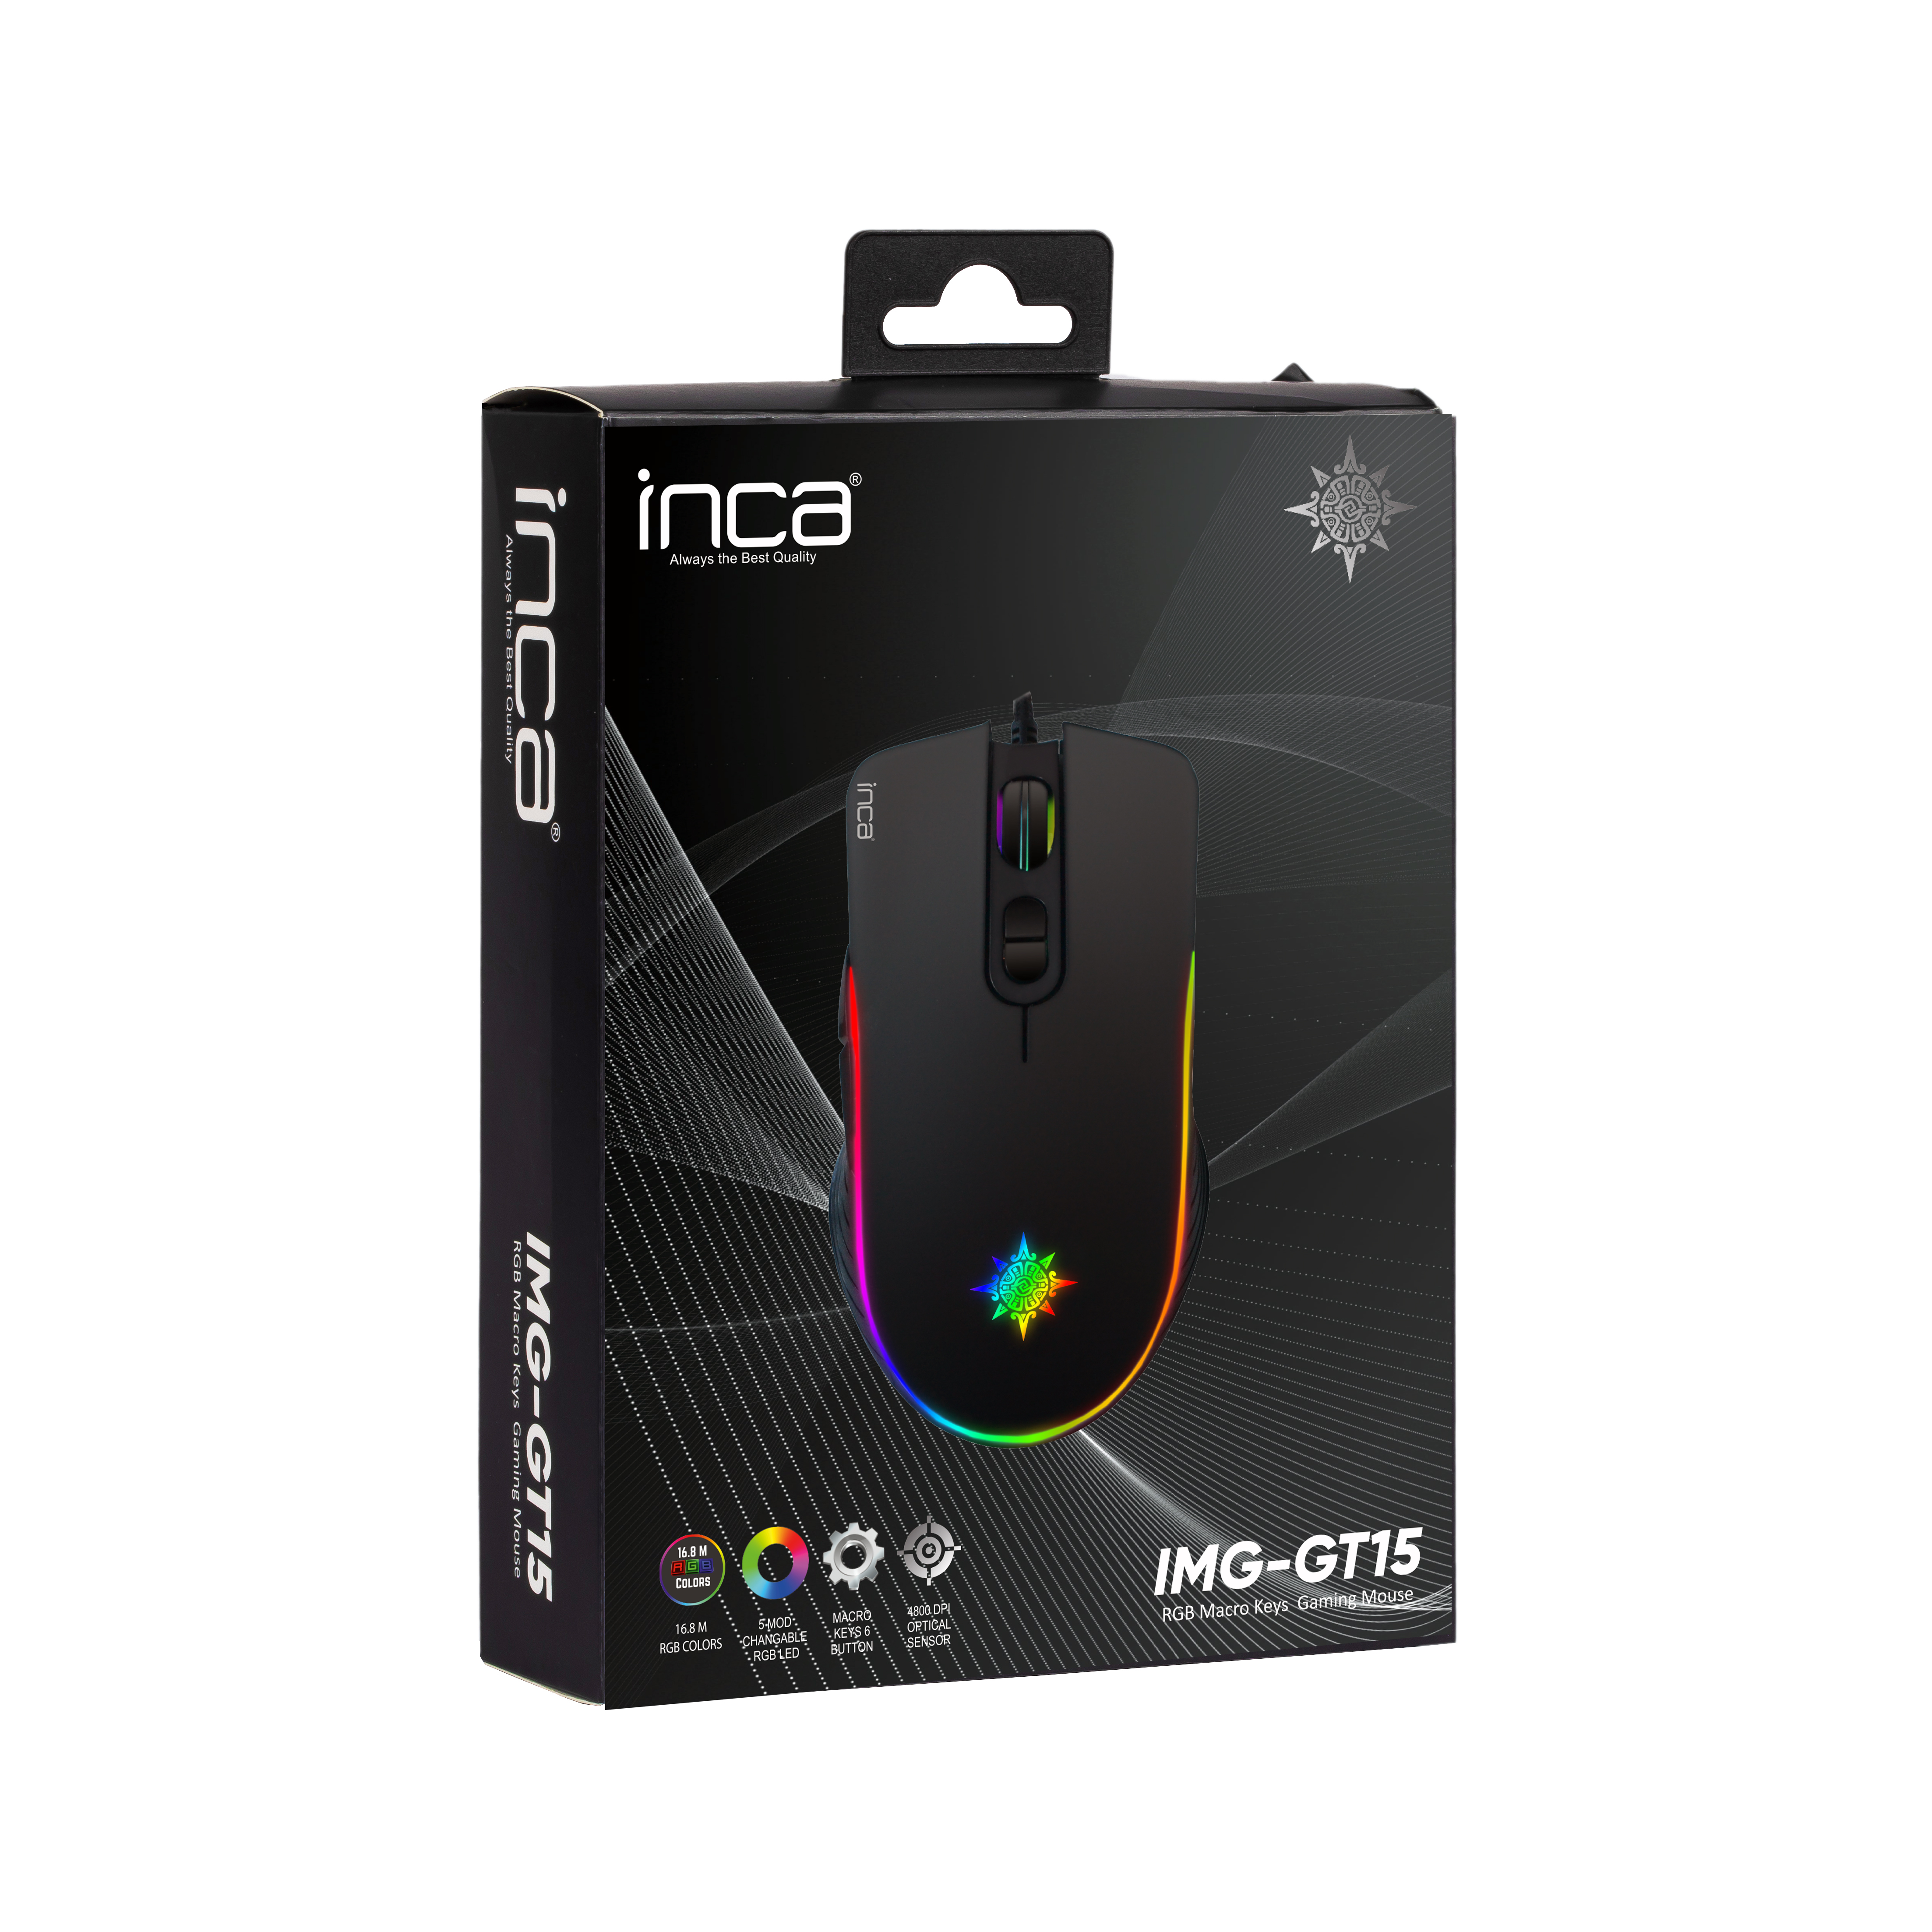 IMG-GT15 Schwarz Gaming Maus, INCA